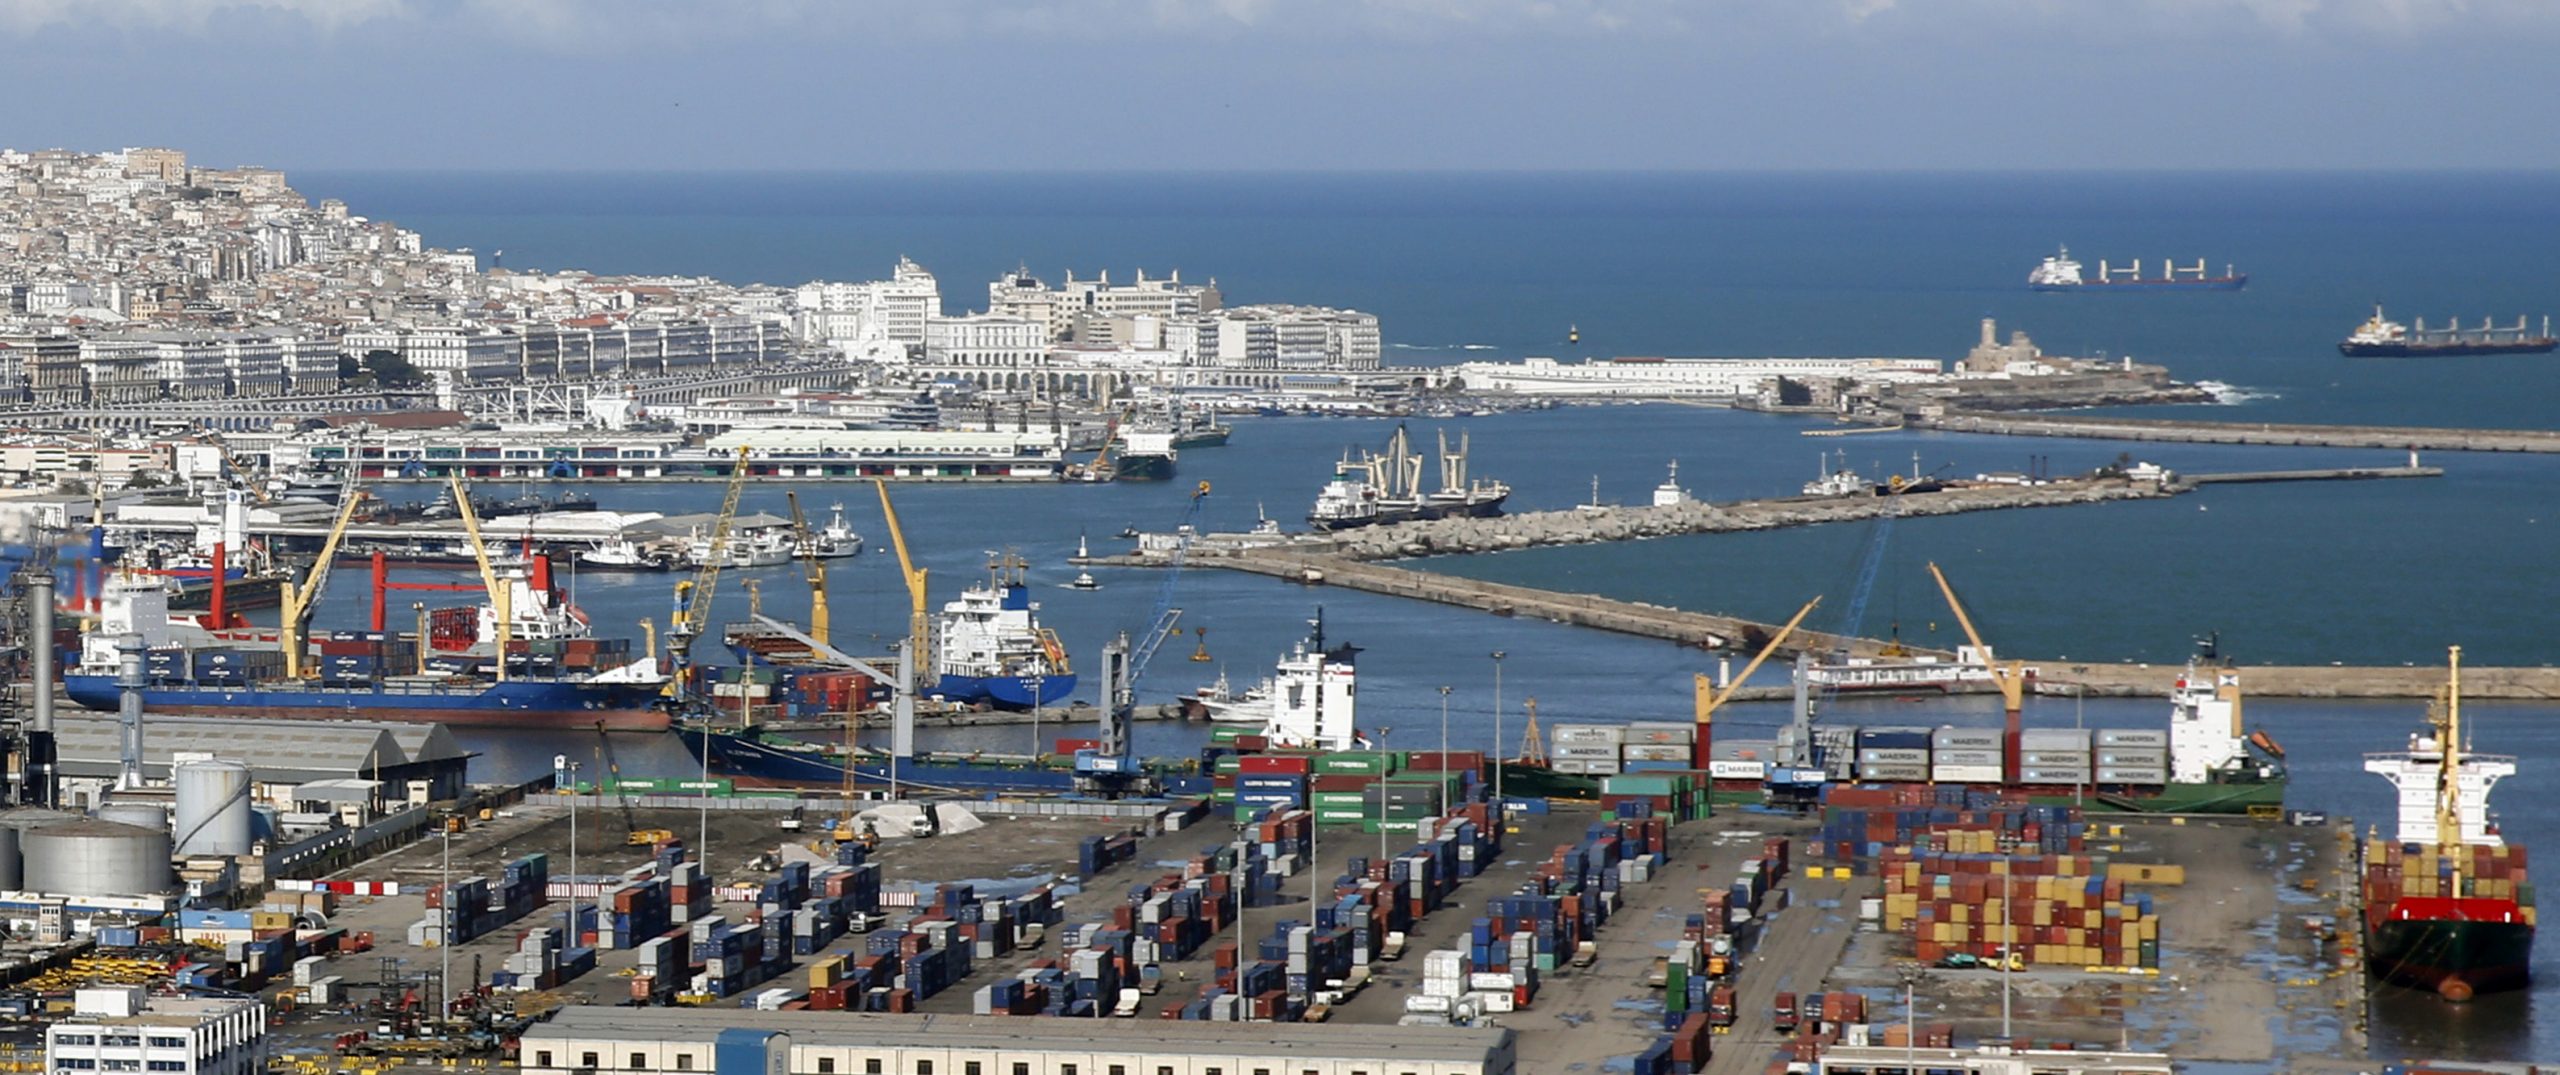 النقل البحري تخلف كثيرا وموانئ الجزائر بحاجة إلى إصلاح كامل وفوري